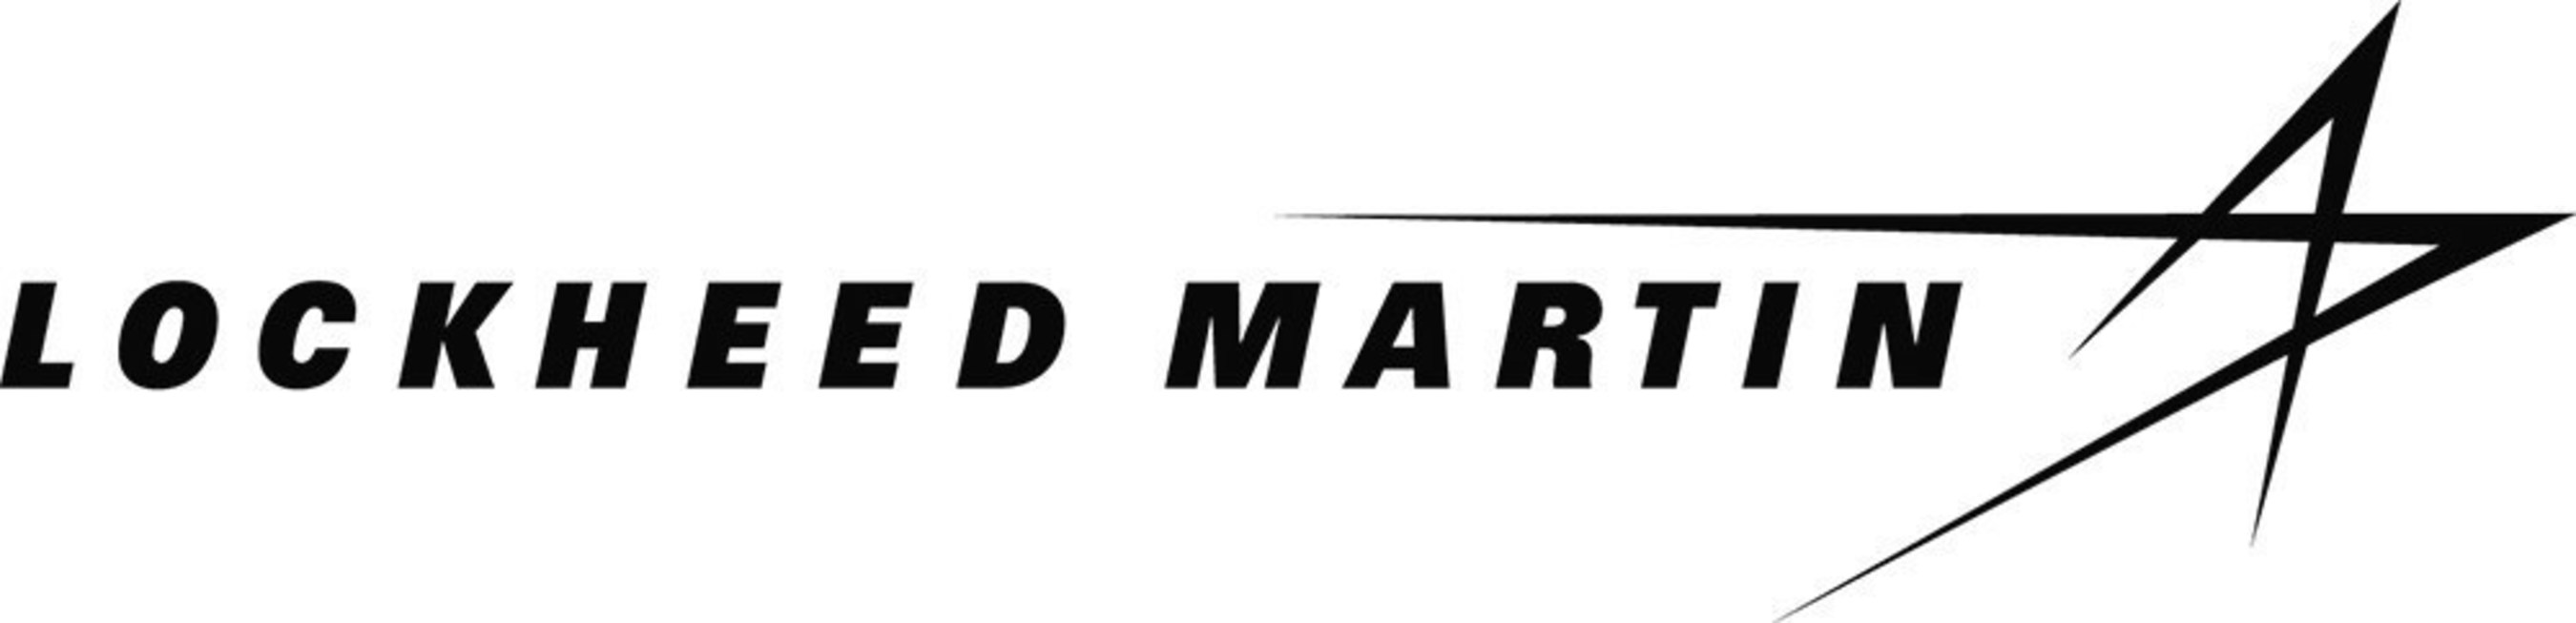 Lockheed Martin logo.